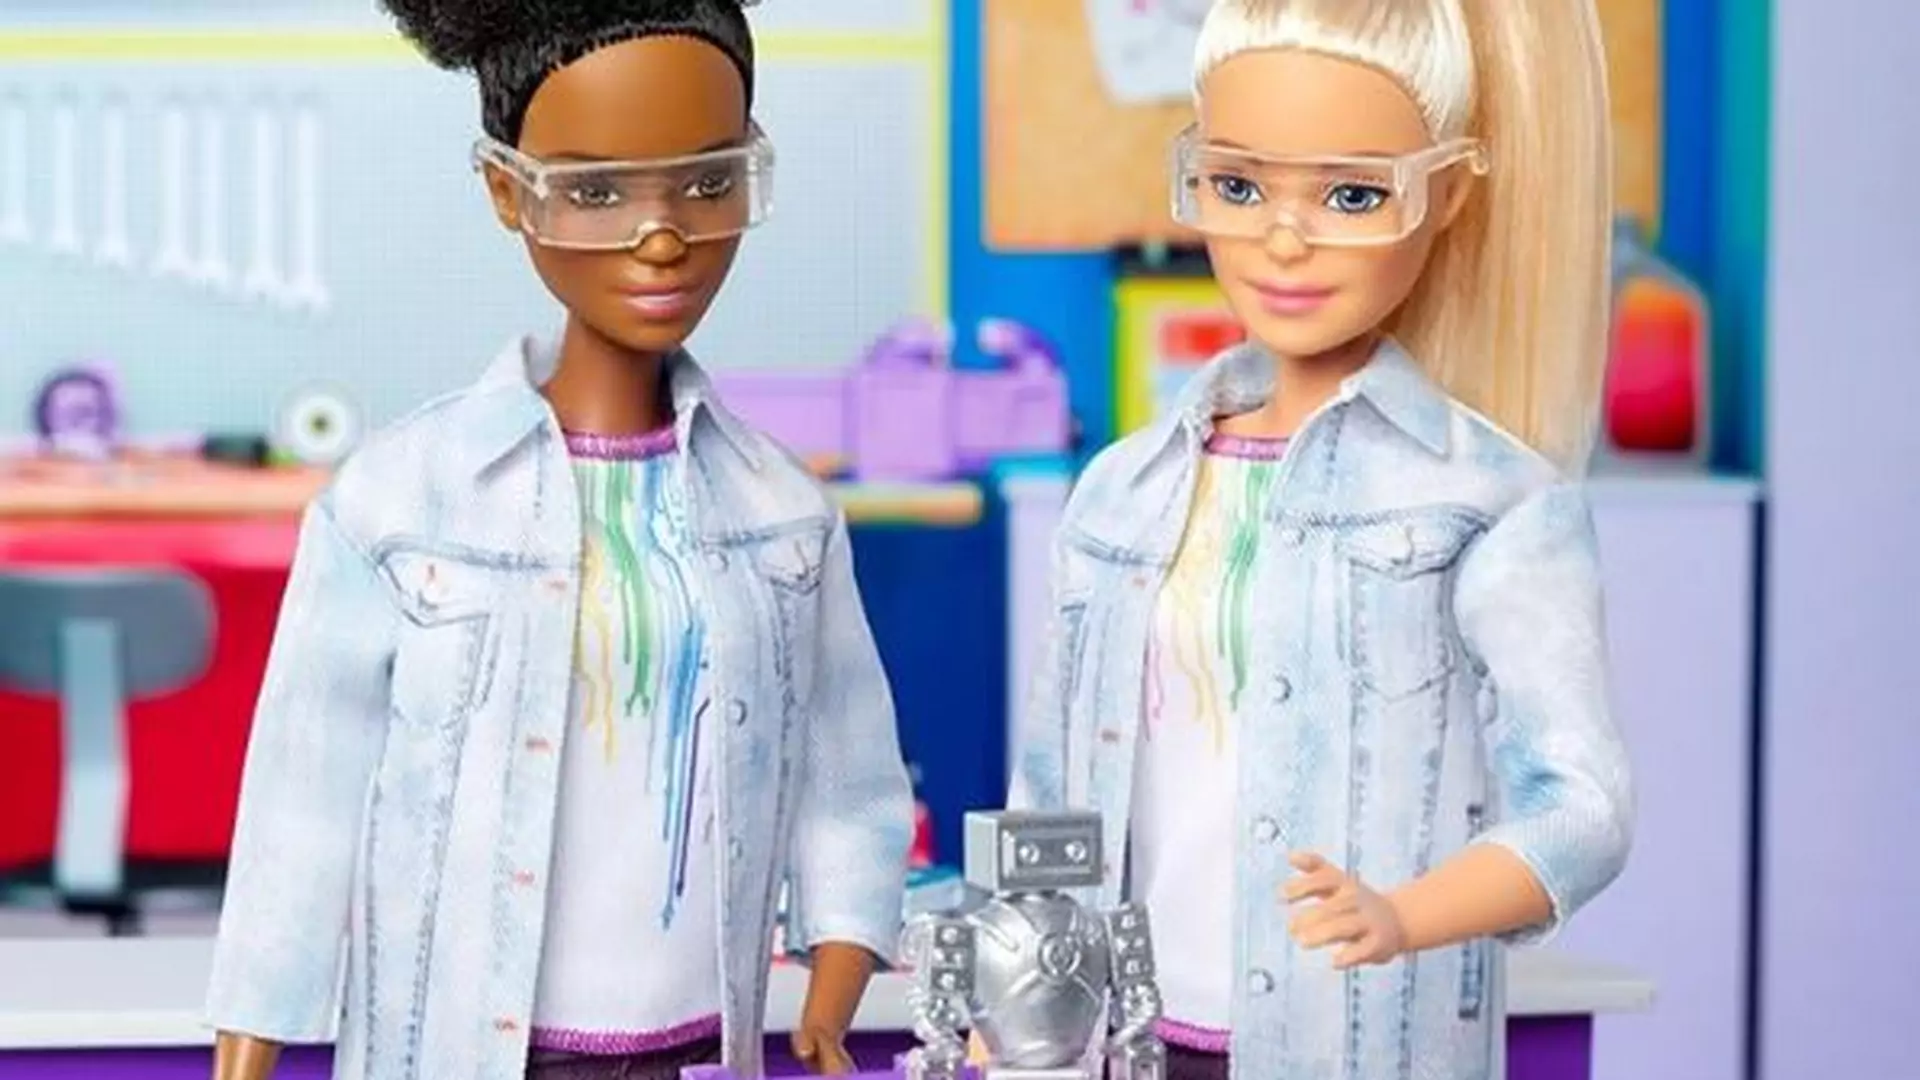 Barbie w świecie robotyki. Producenci lalek inspirują dziewczyny do podejmowania "męskich" zawodów